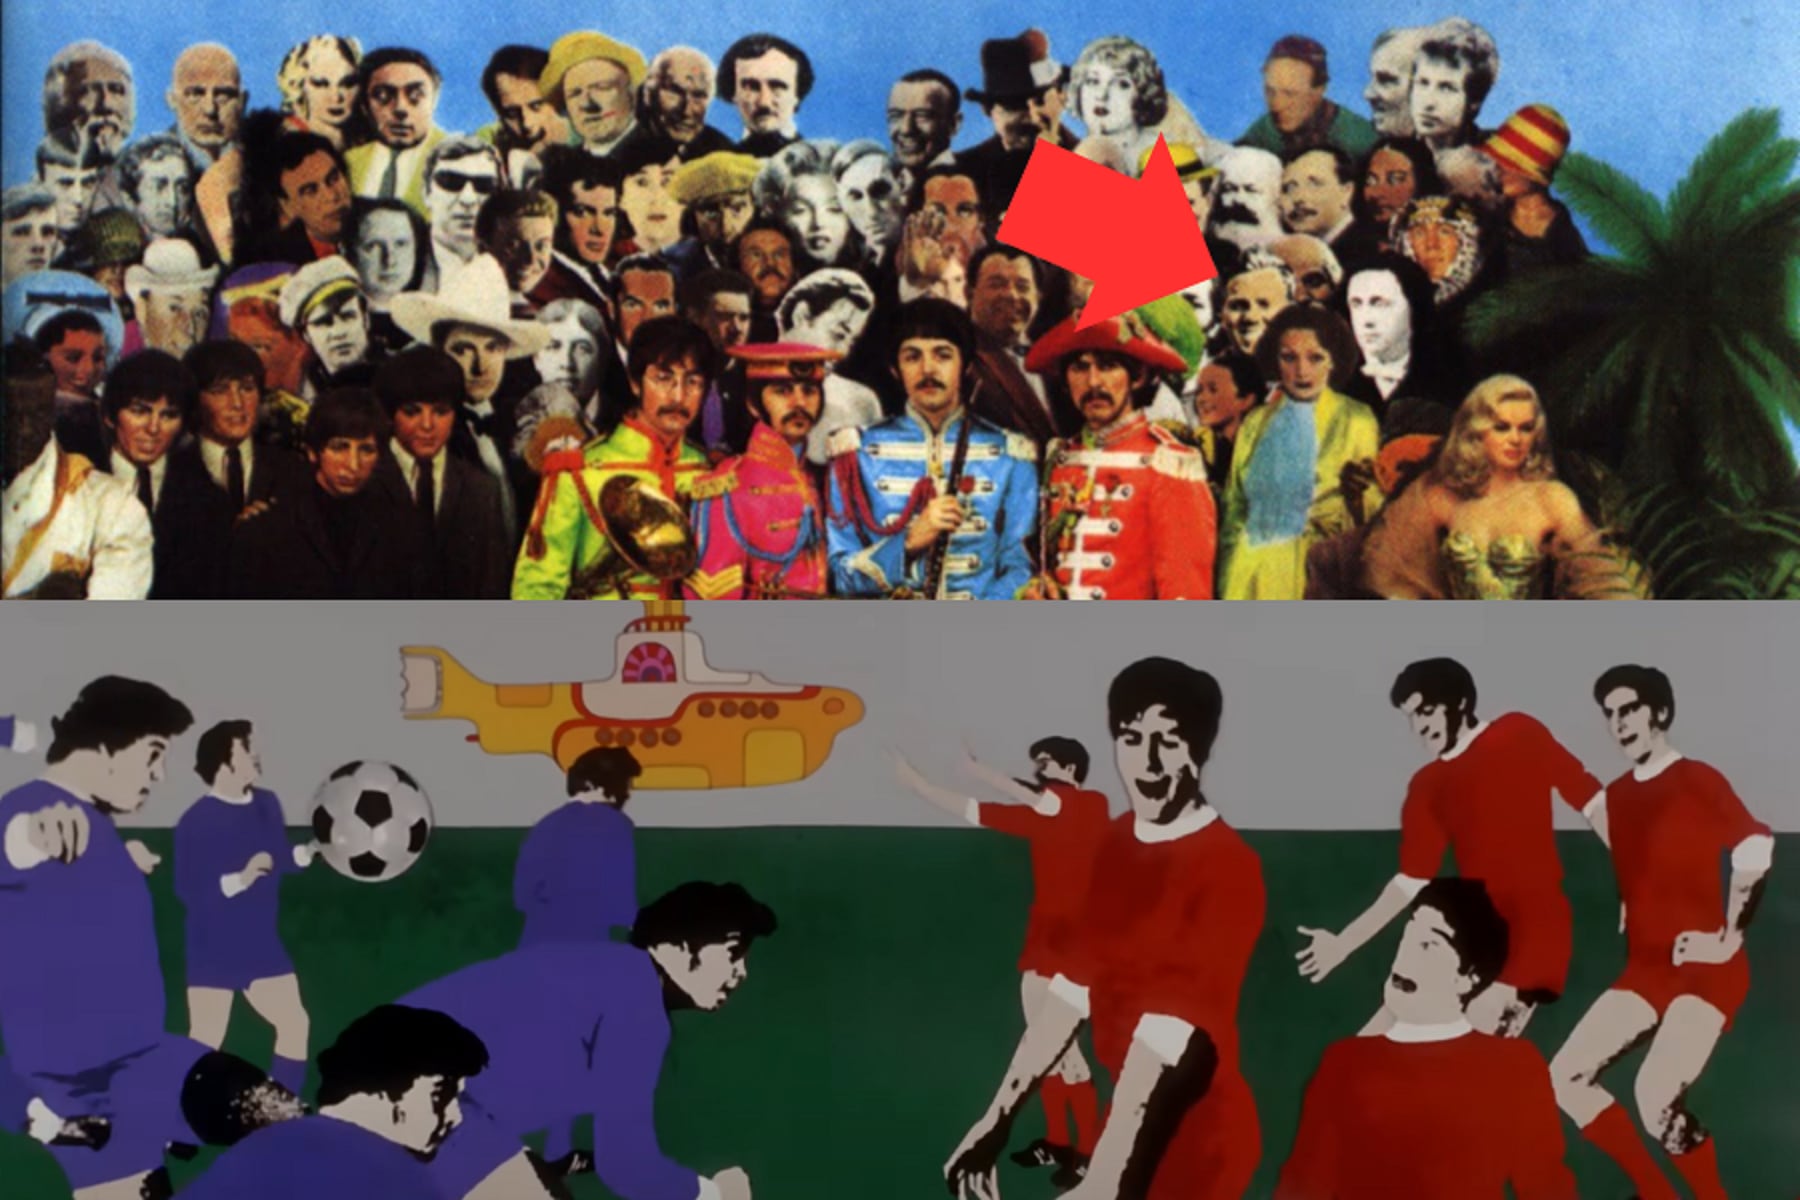 El exjugador de Liverpool Albert Stubbins fue incluido en la portada del Sgt. Pepper's Lonely Hearts Club Band y en el video de Eleanor Rigby incluyeron una referencia al Derbi de Merseyside.